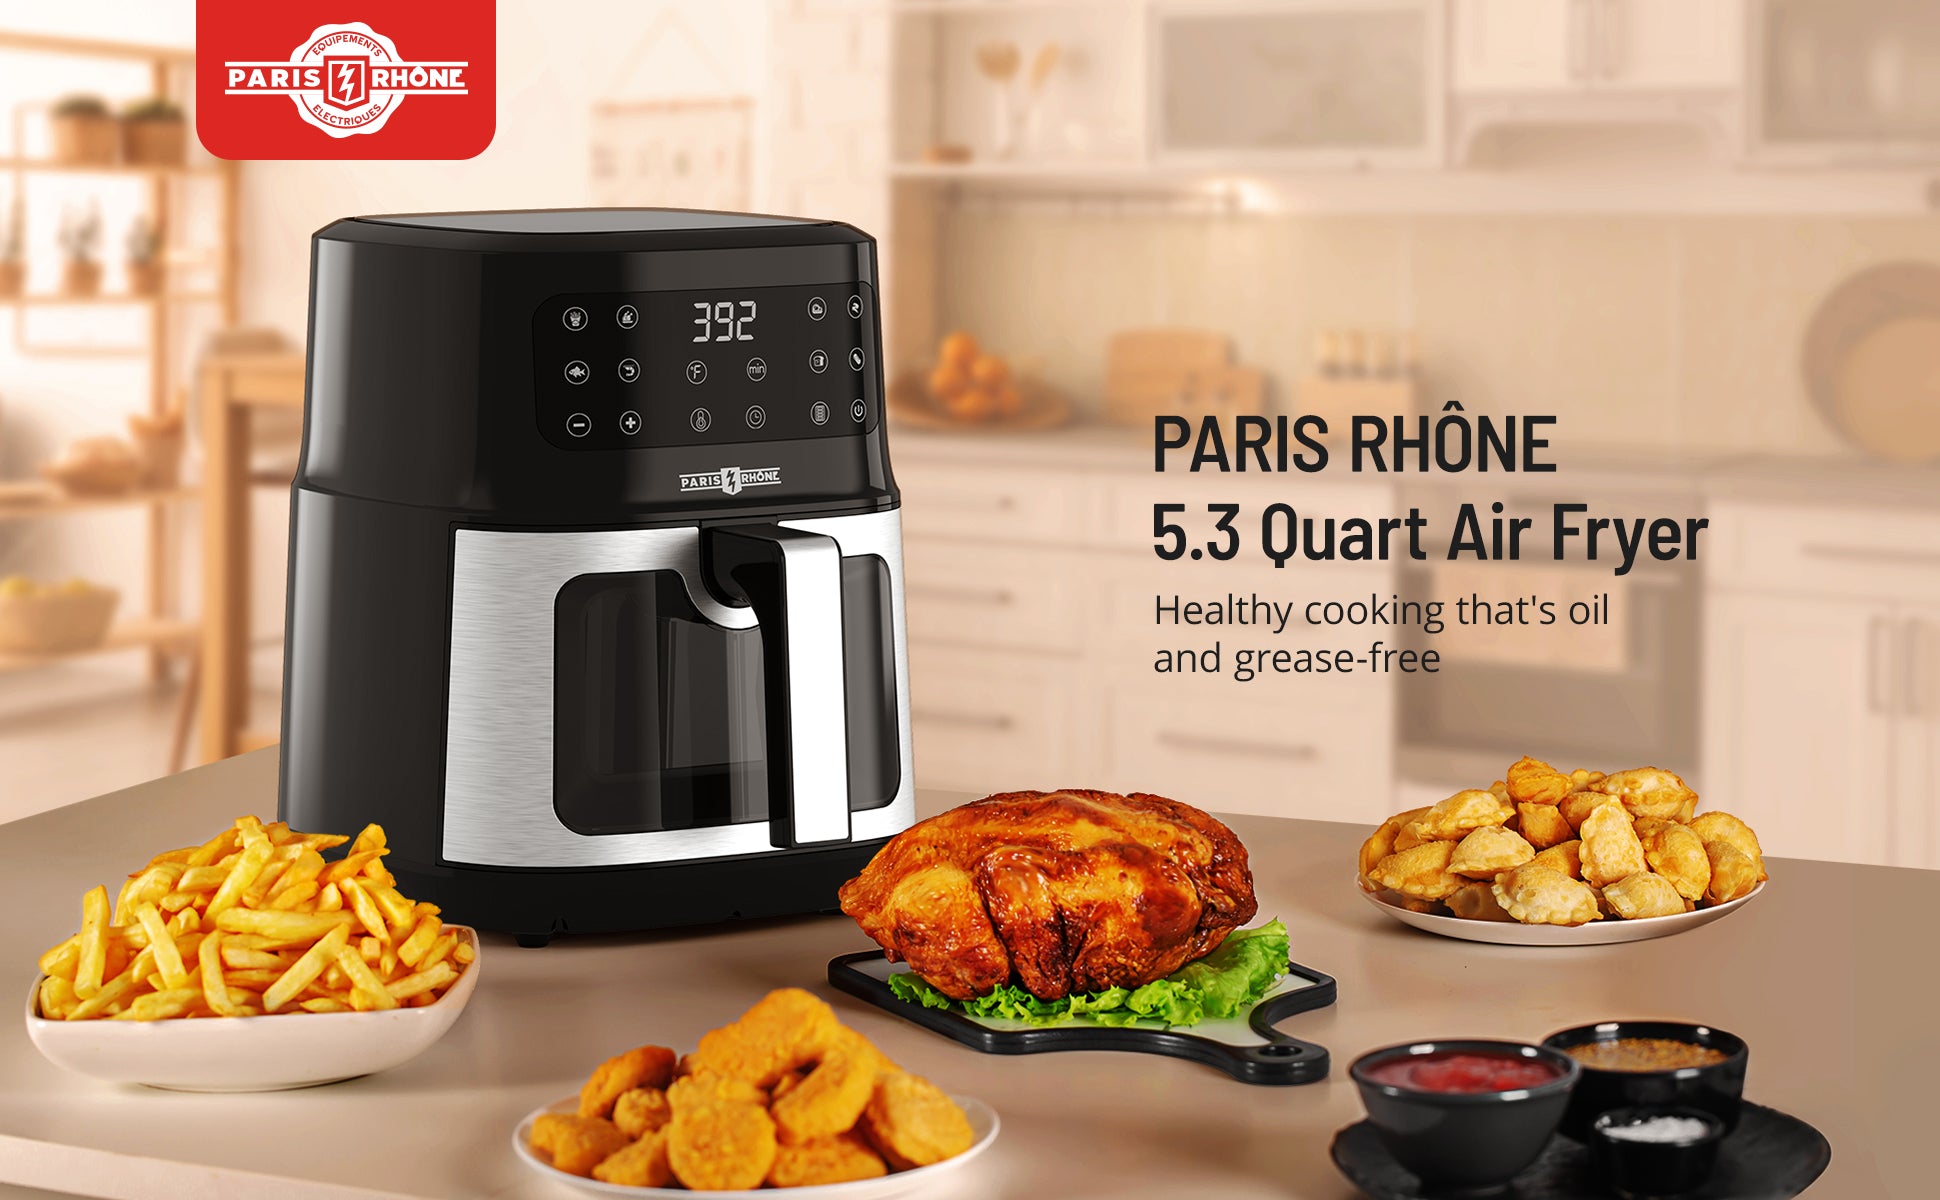  Air Fryer Toaster Oven, Paris Rhône 26QT Convection